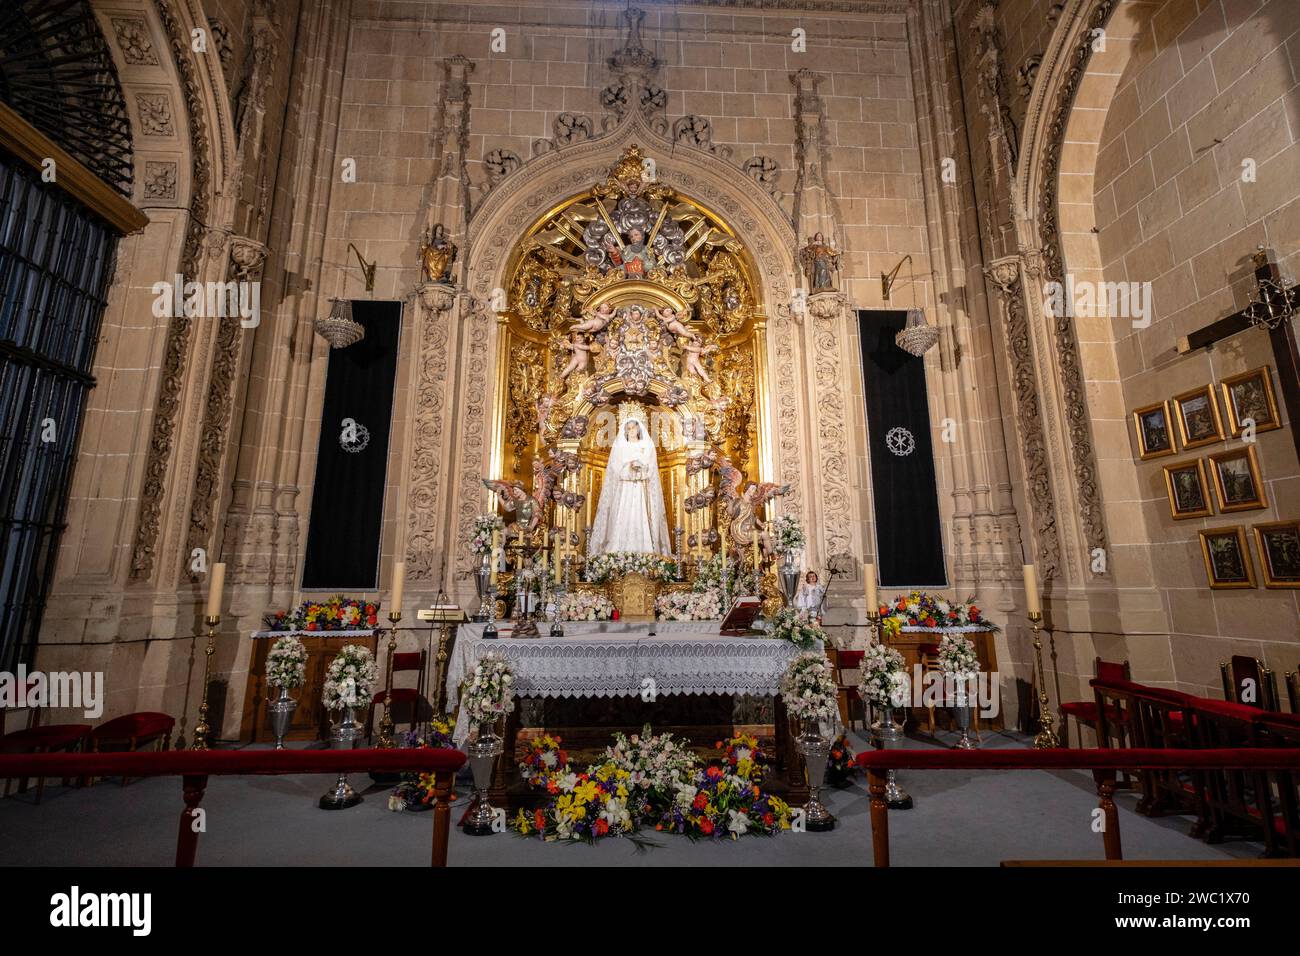 capilla del Santo Cristo de las batallas, Catedral de la Asunción de la Virgen, Salamanca, comunidad Autónoma de Castilla y León, España Foto de stock